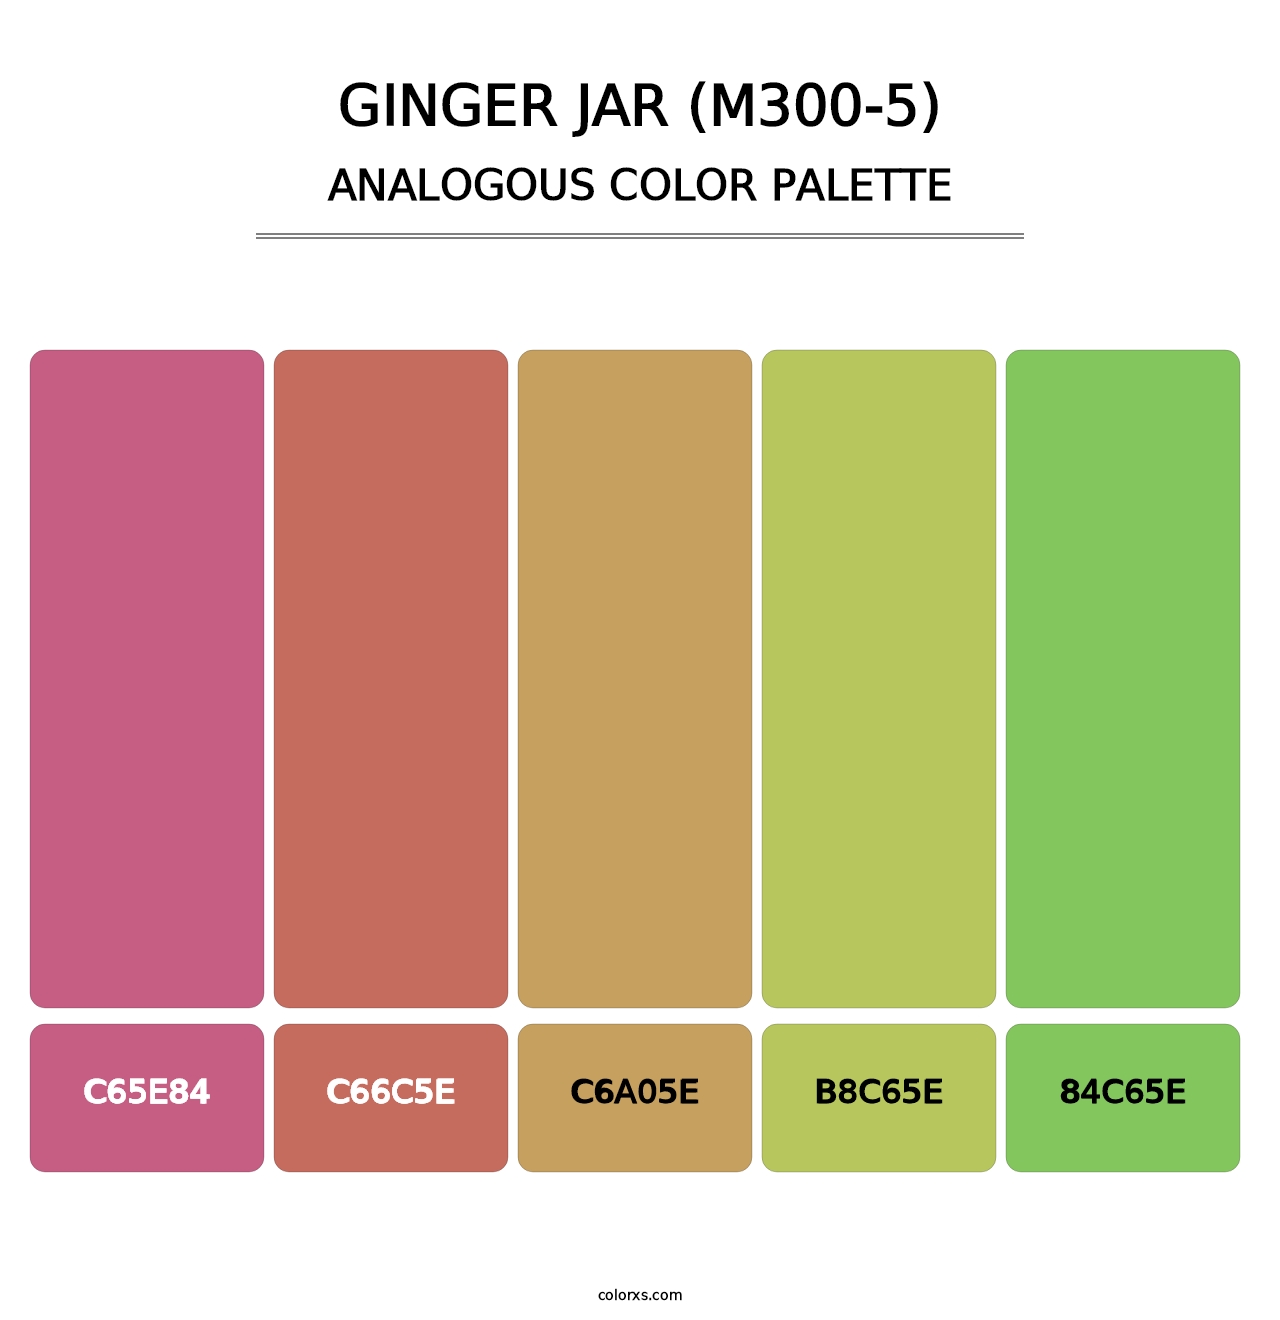 Ginger Jar (M300-5) - Analogous Color Palette